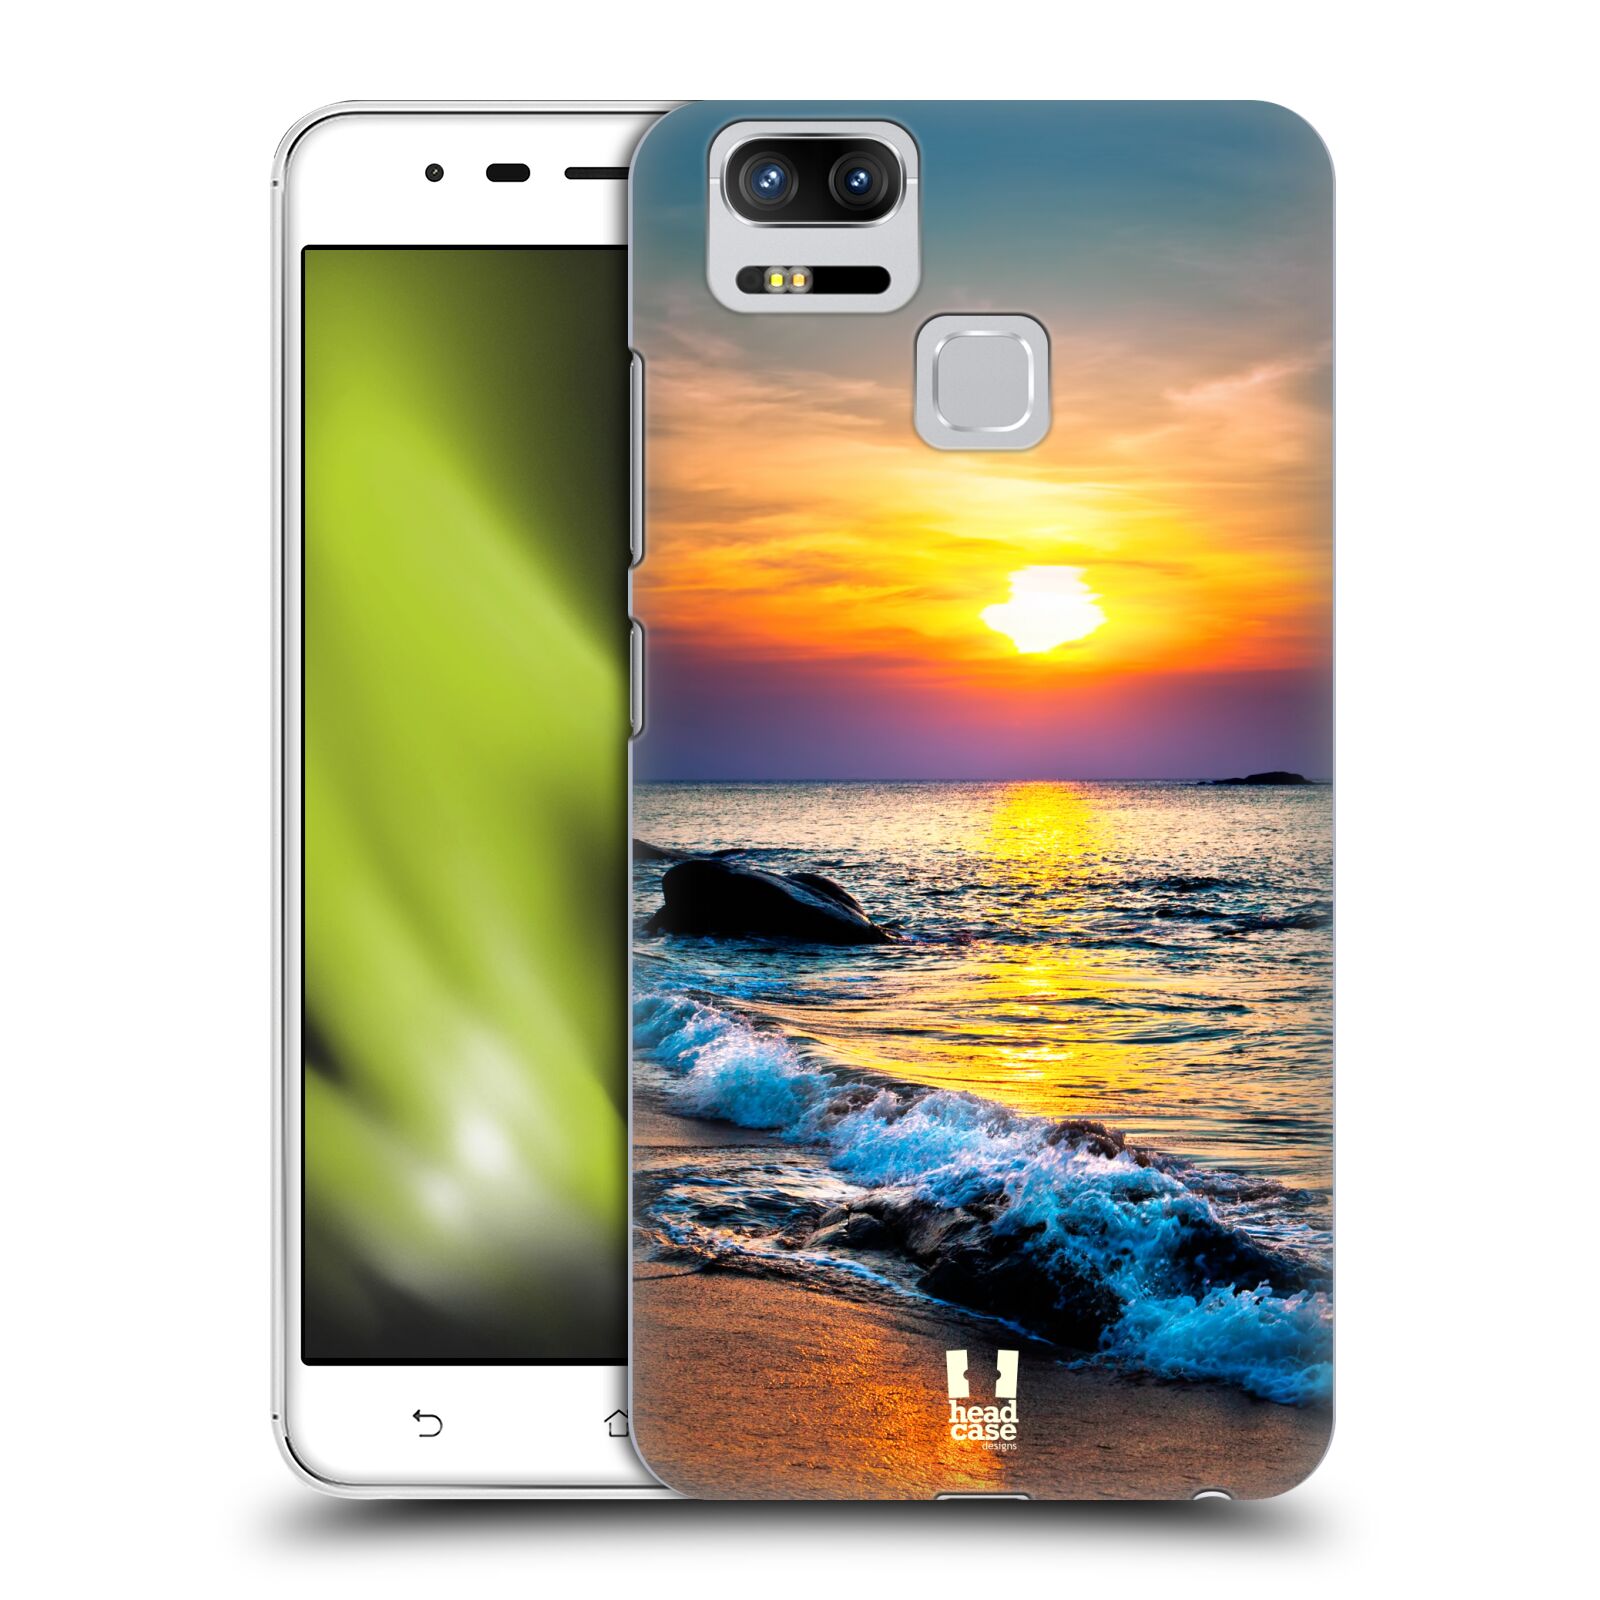 HEAD CASE plastový obal na mobil Asus Zenfone 3 Zoom ZE553KL vzor Pláže a Moře barevný západ slunce